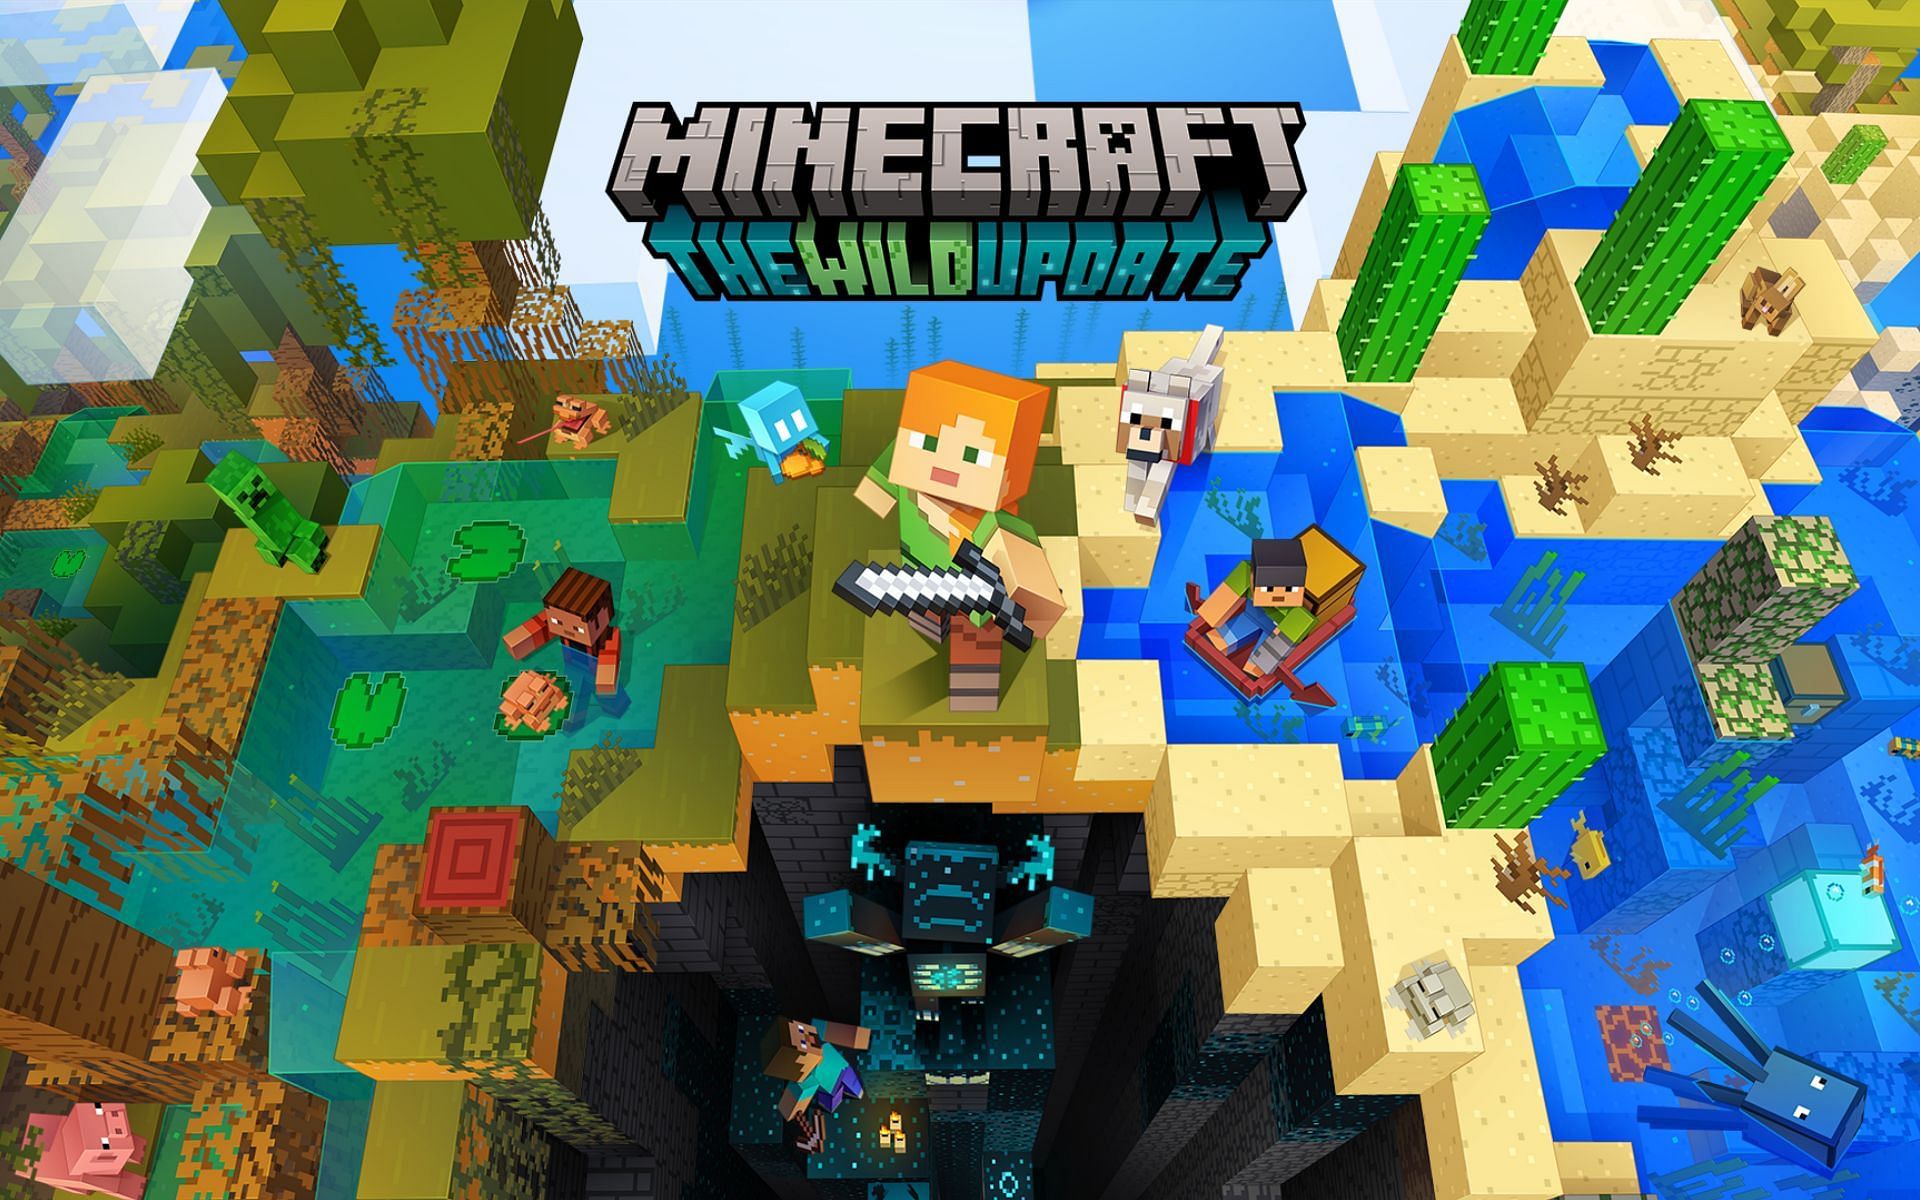 Minecraft Beta & Preview - 1.19.60.22 – Minecraft Feedback